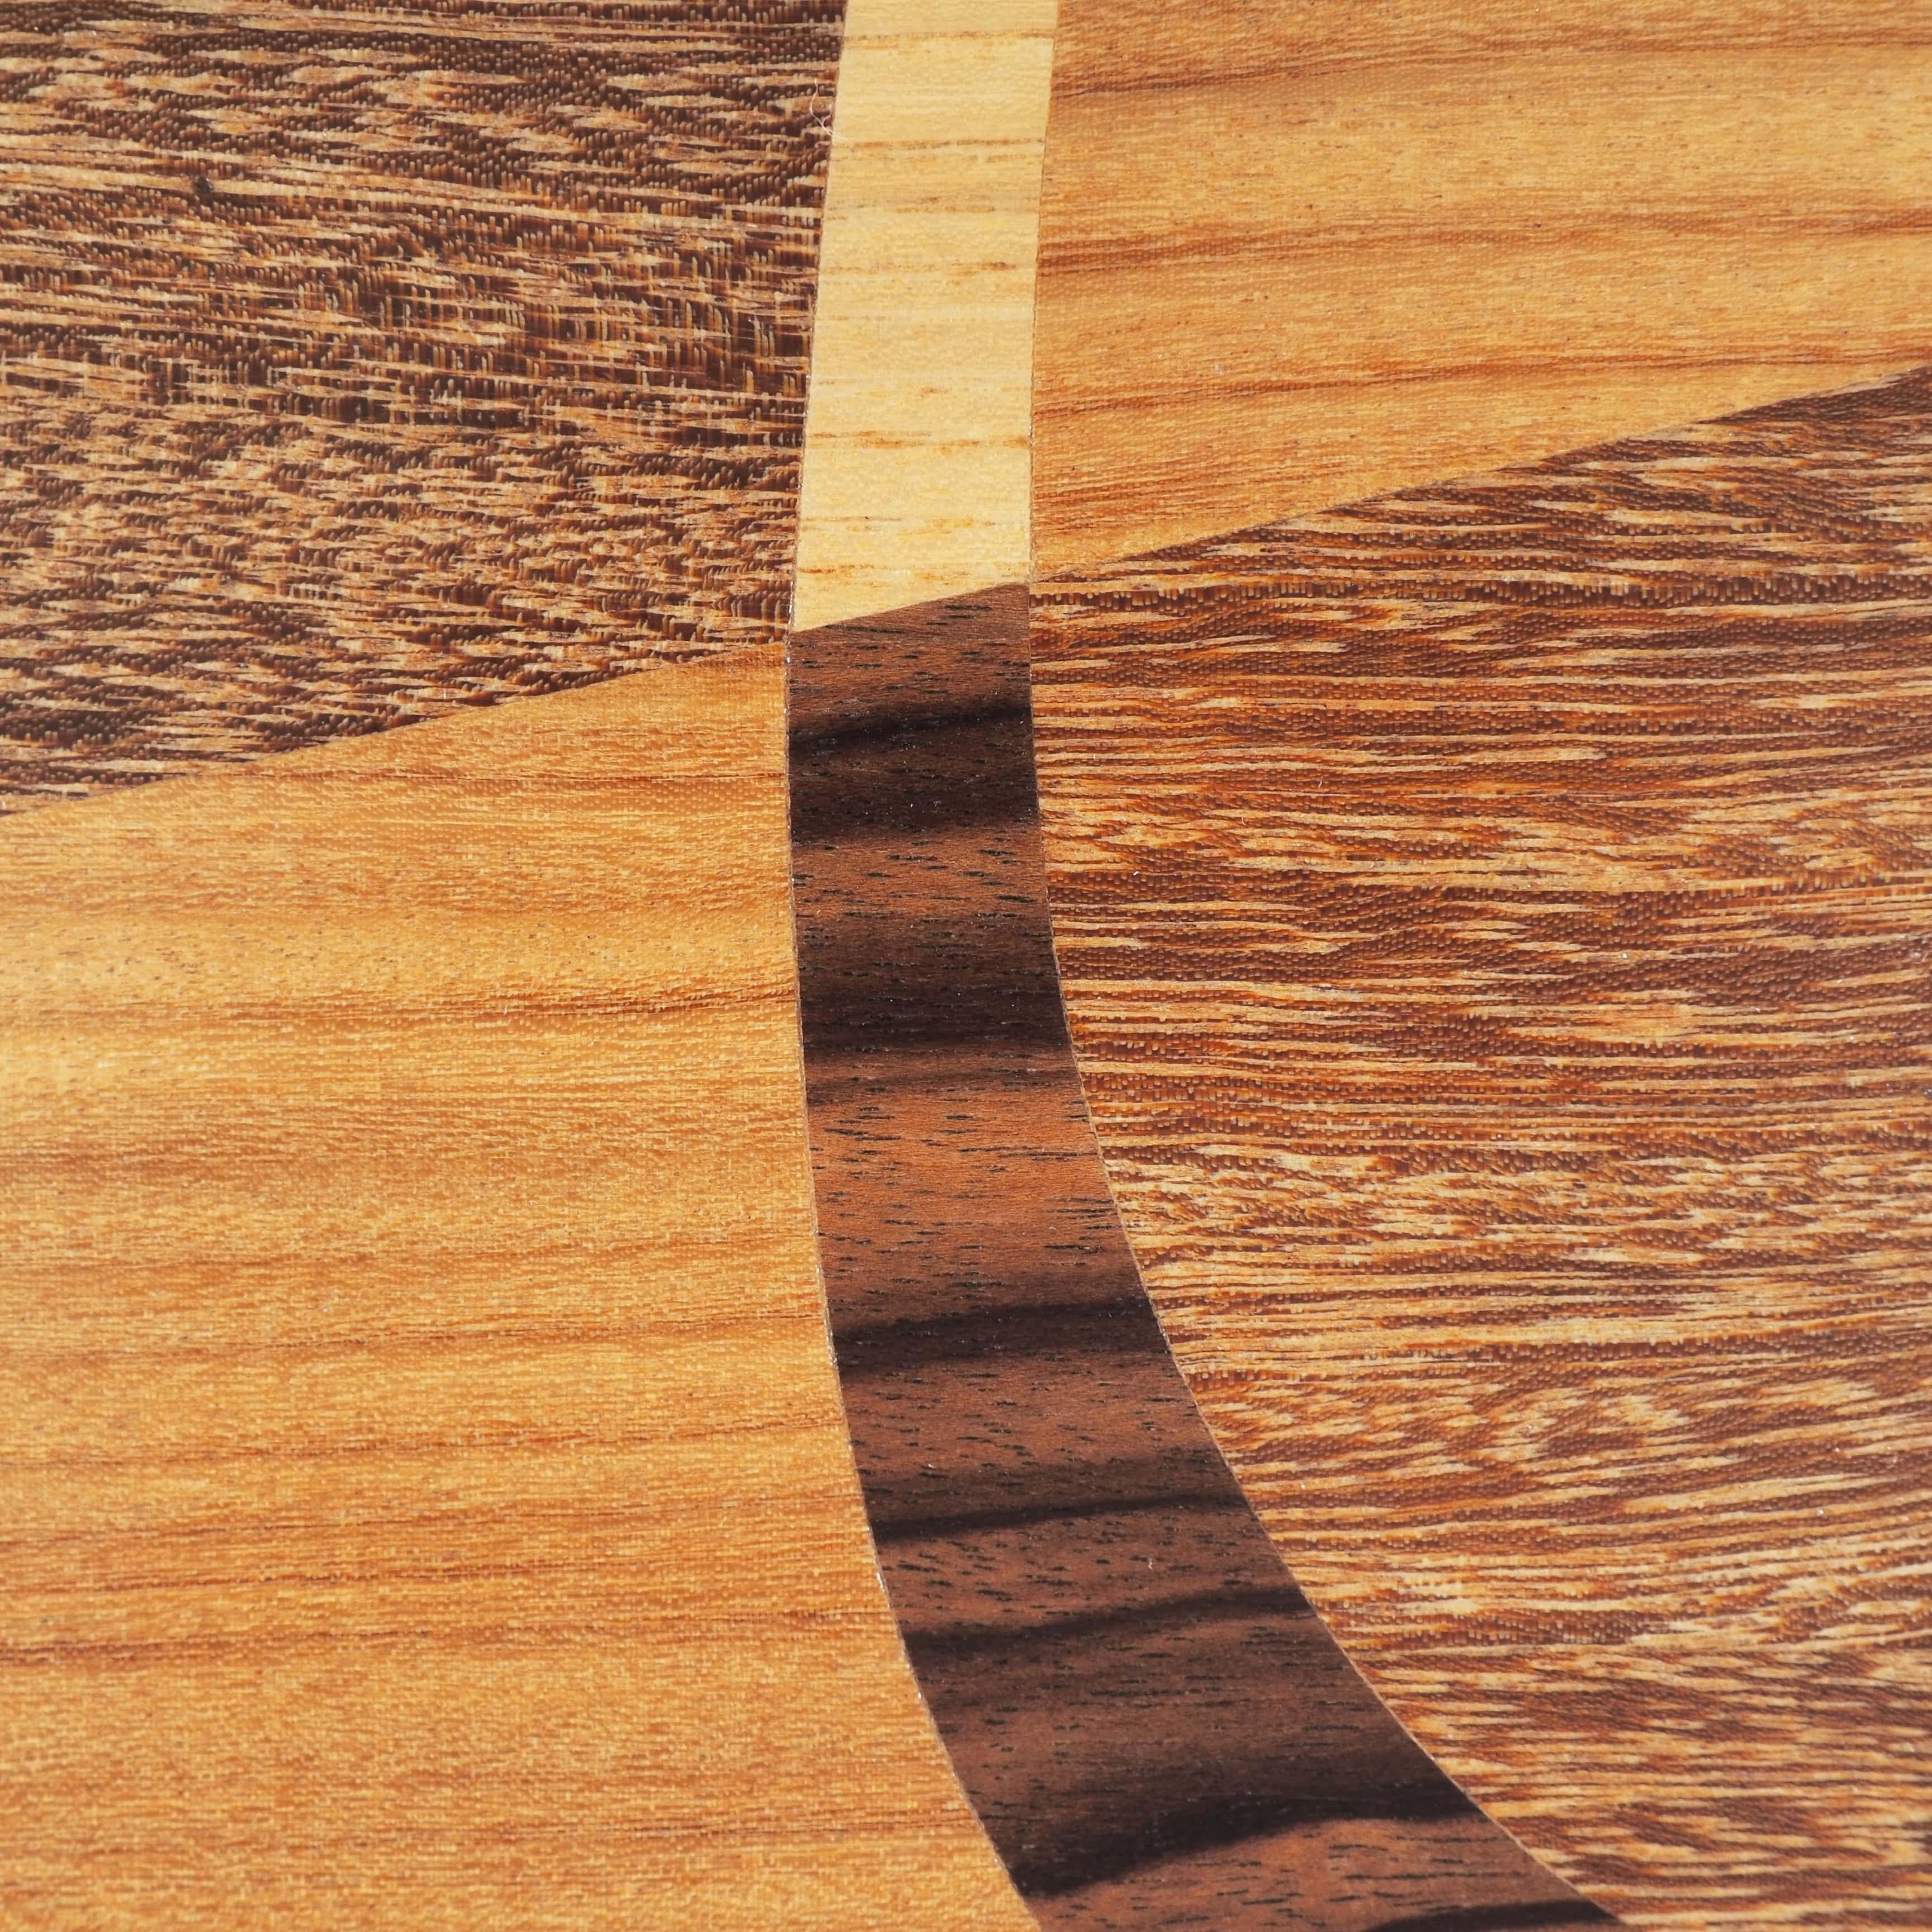 inlaid wood coffee table